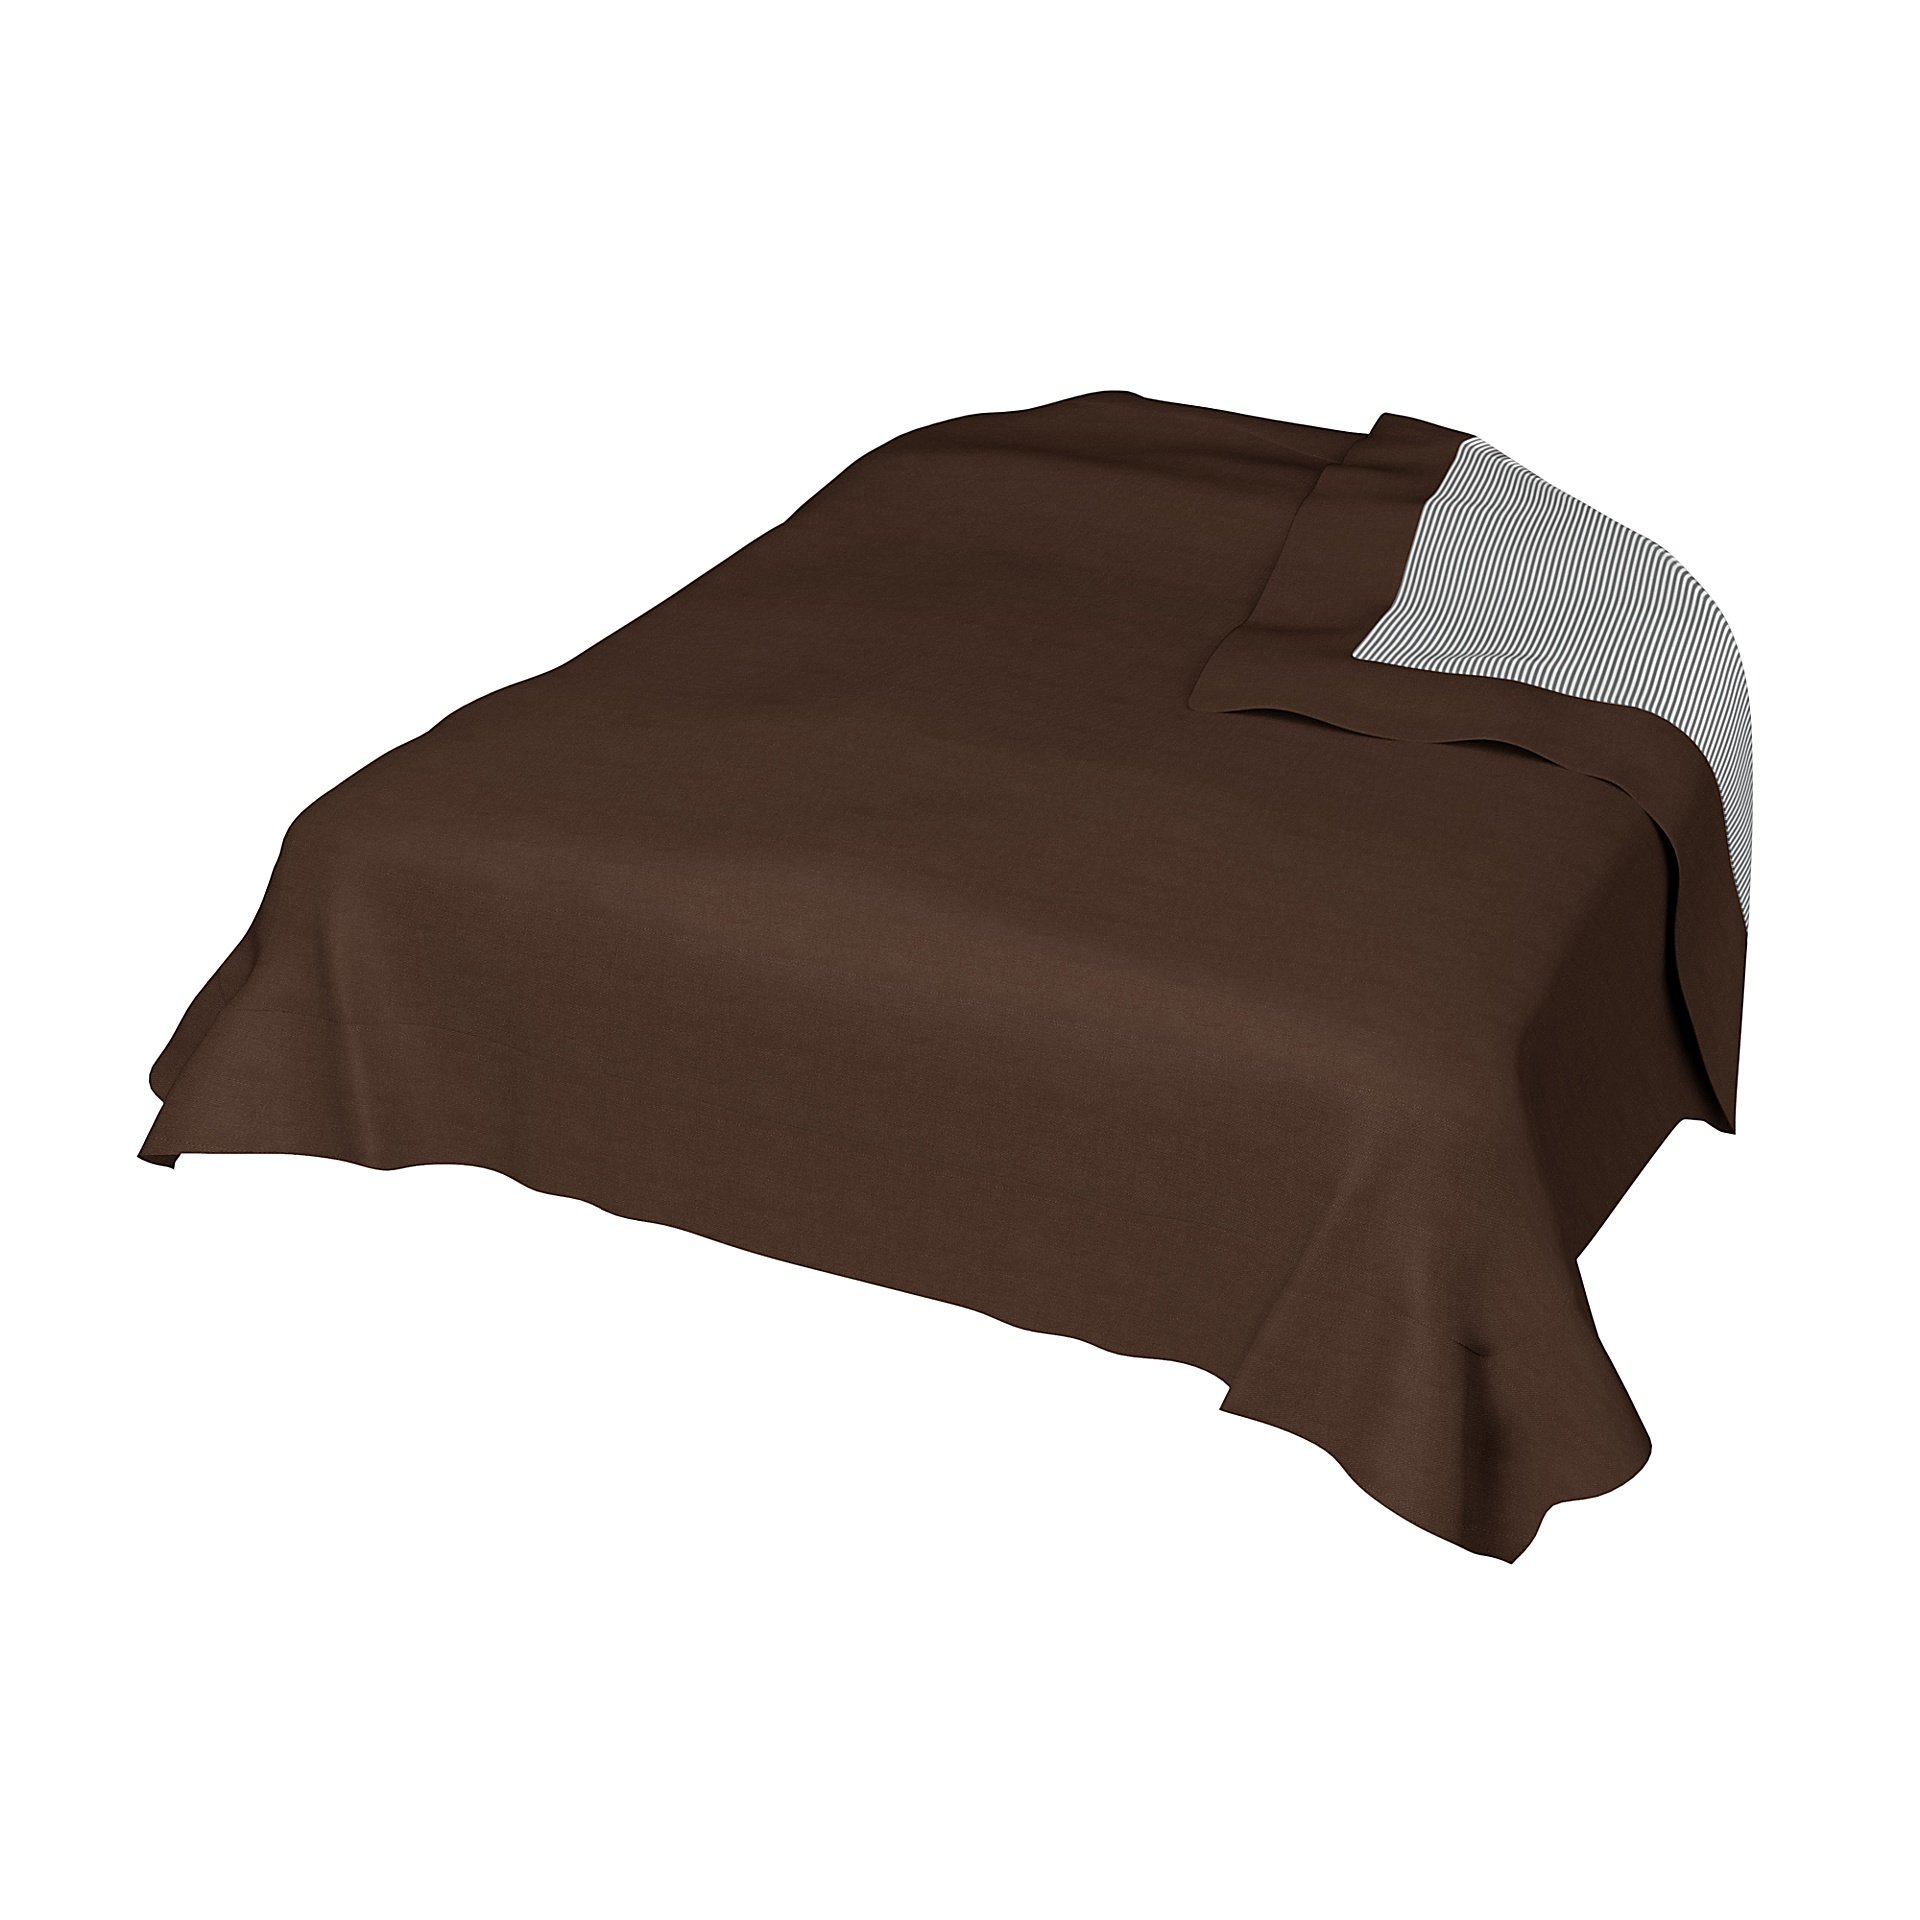 Bedspread, Chocolate, Linen - Bemz